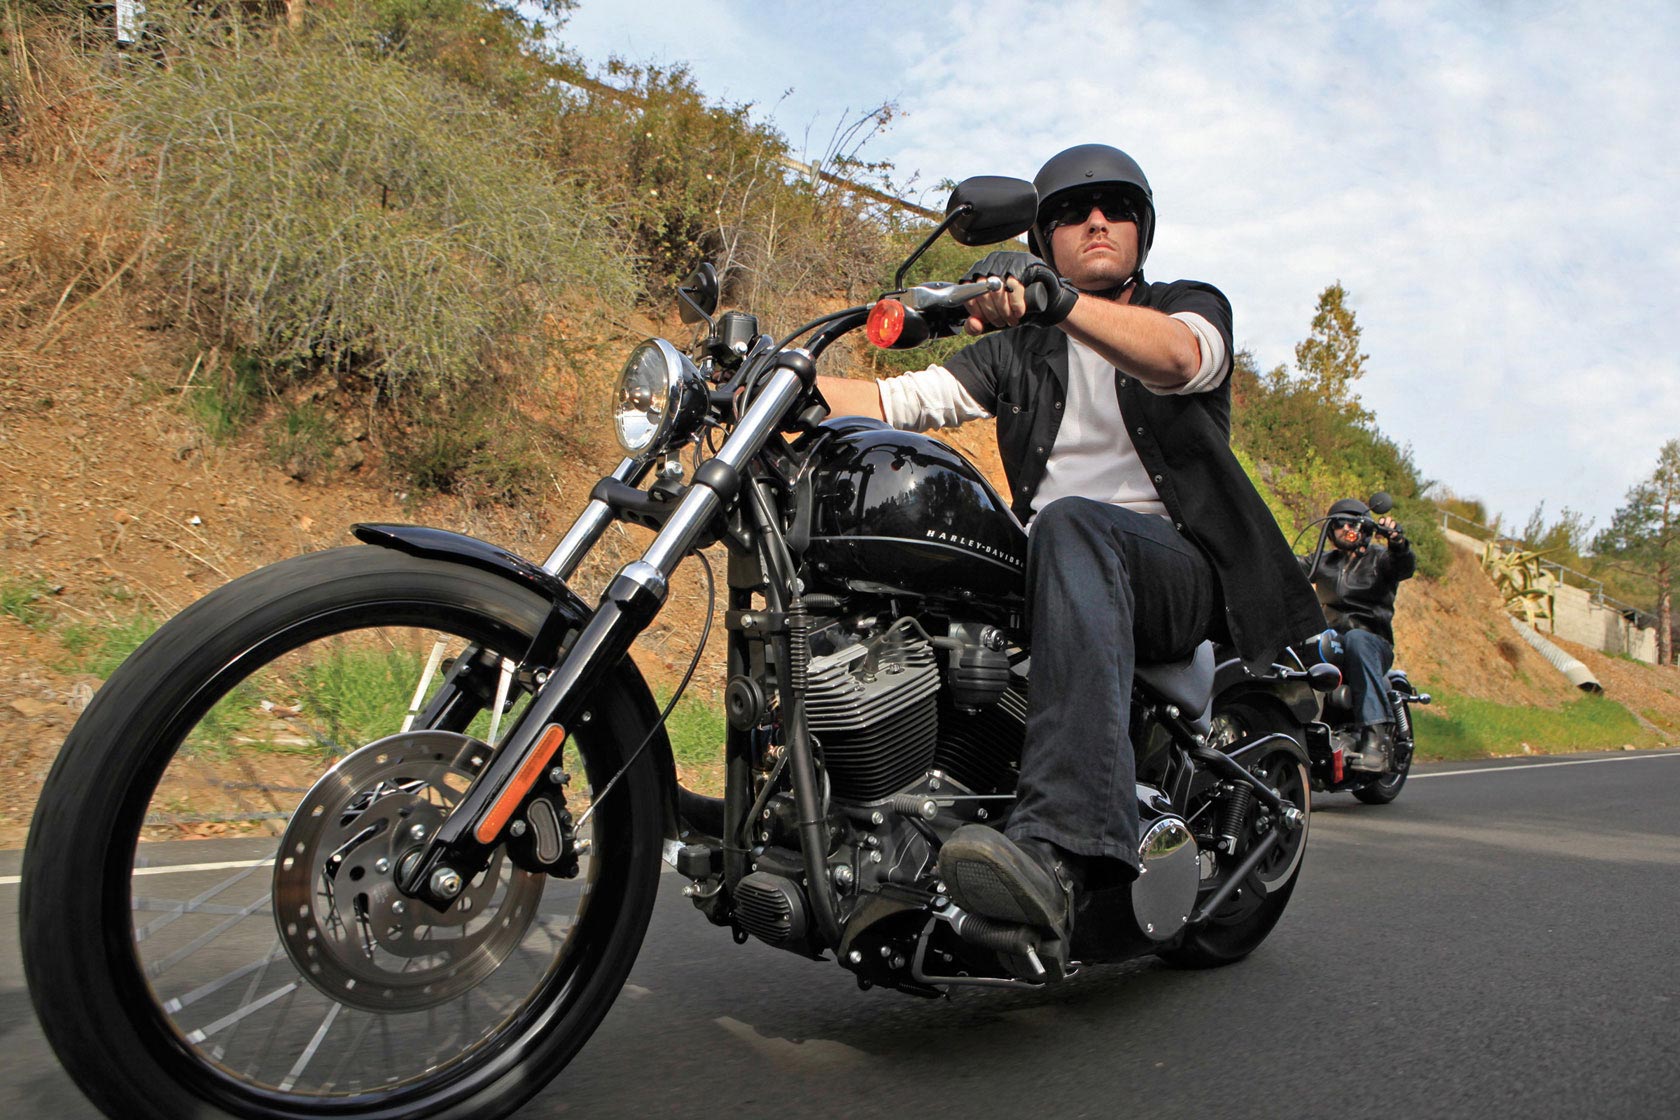 Harley-Davidson.jpg